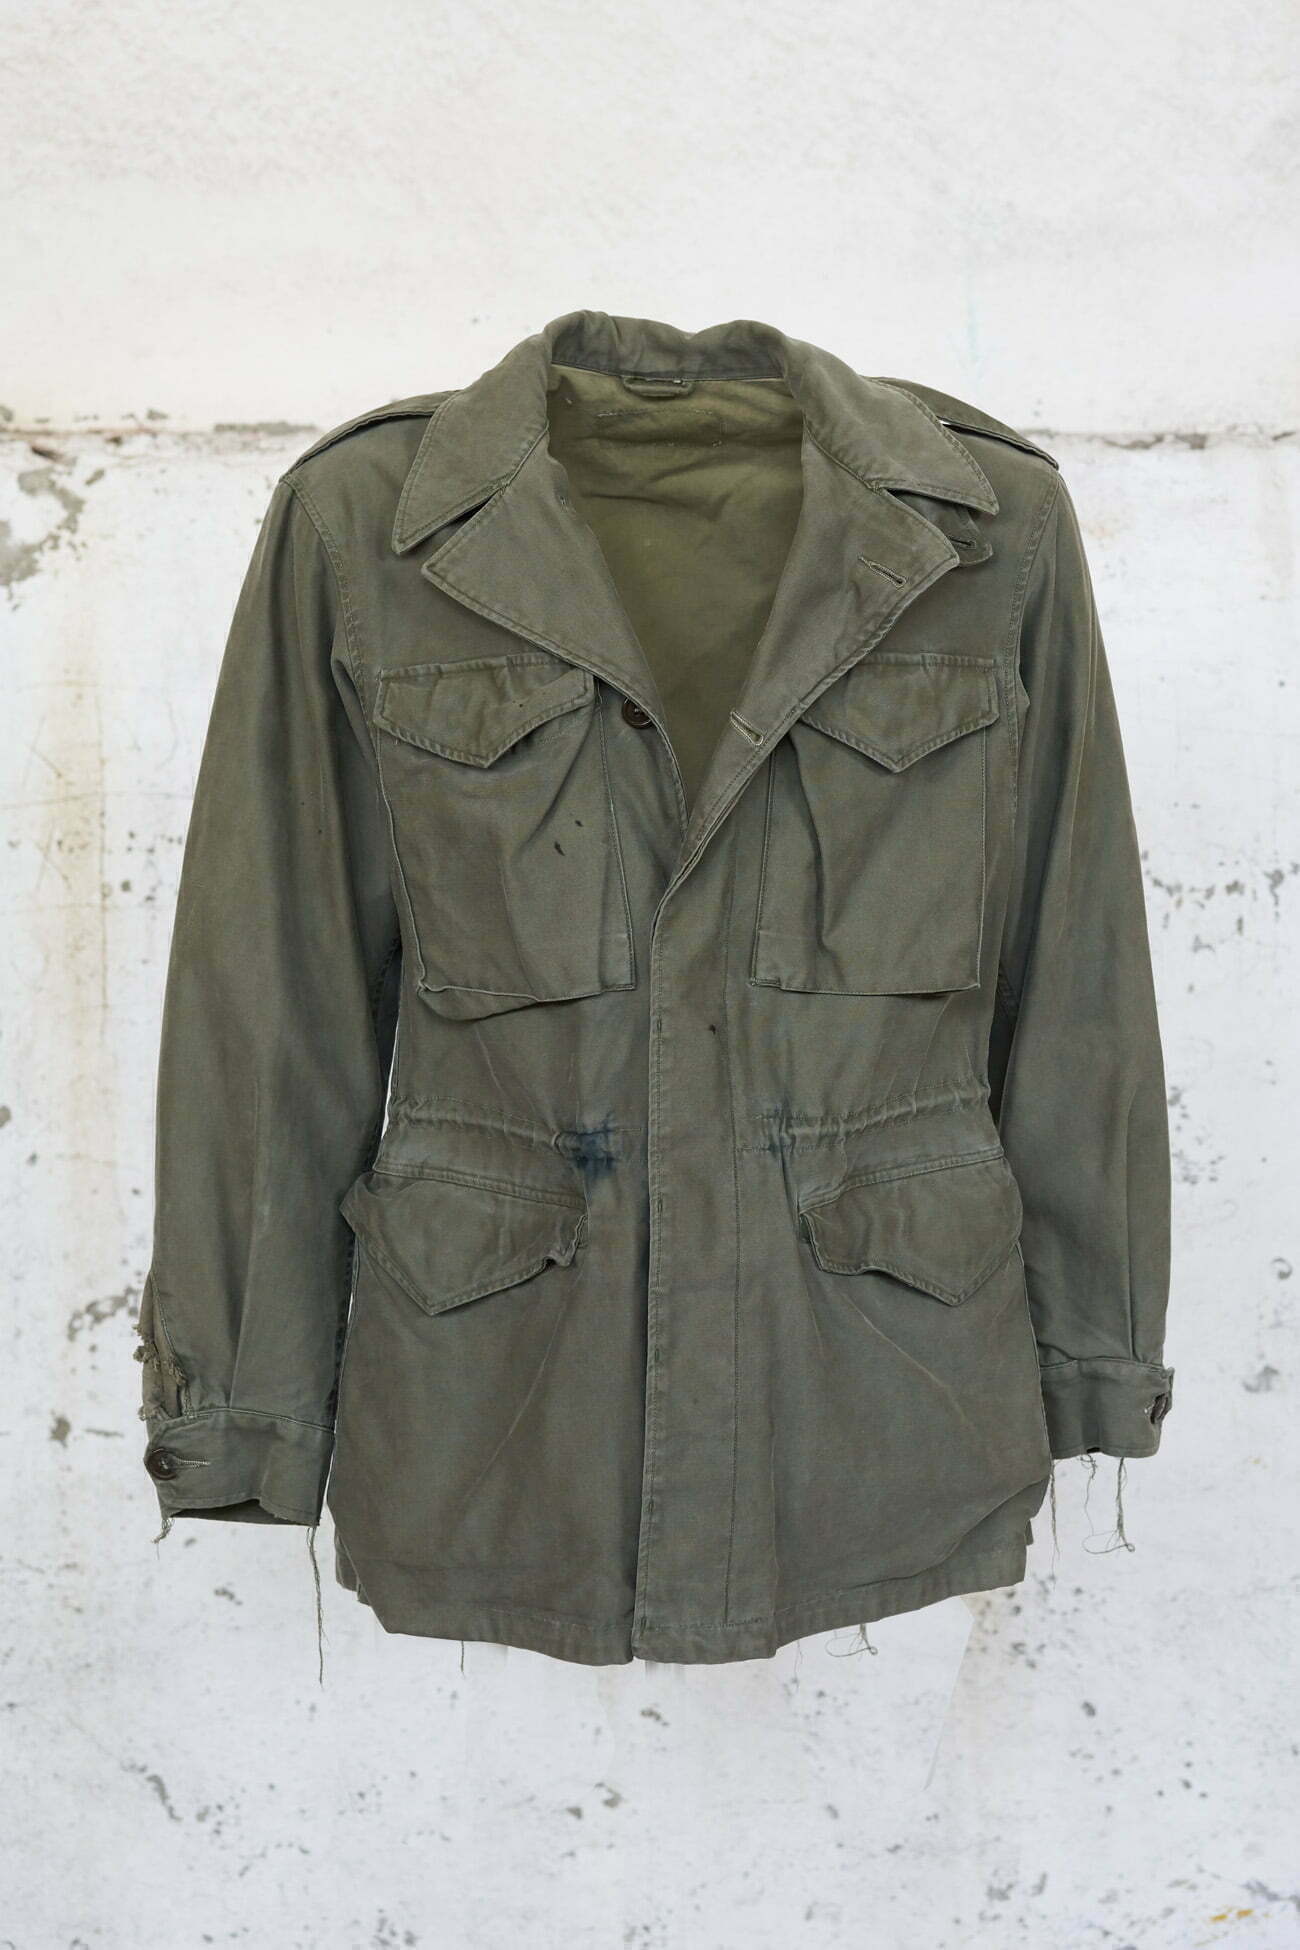 WWII M-43 Field Jacket